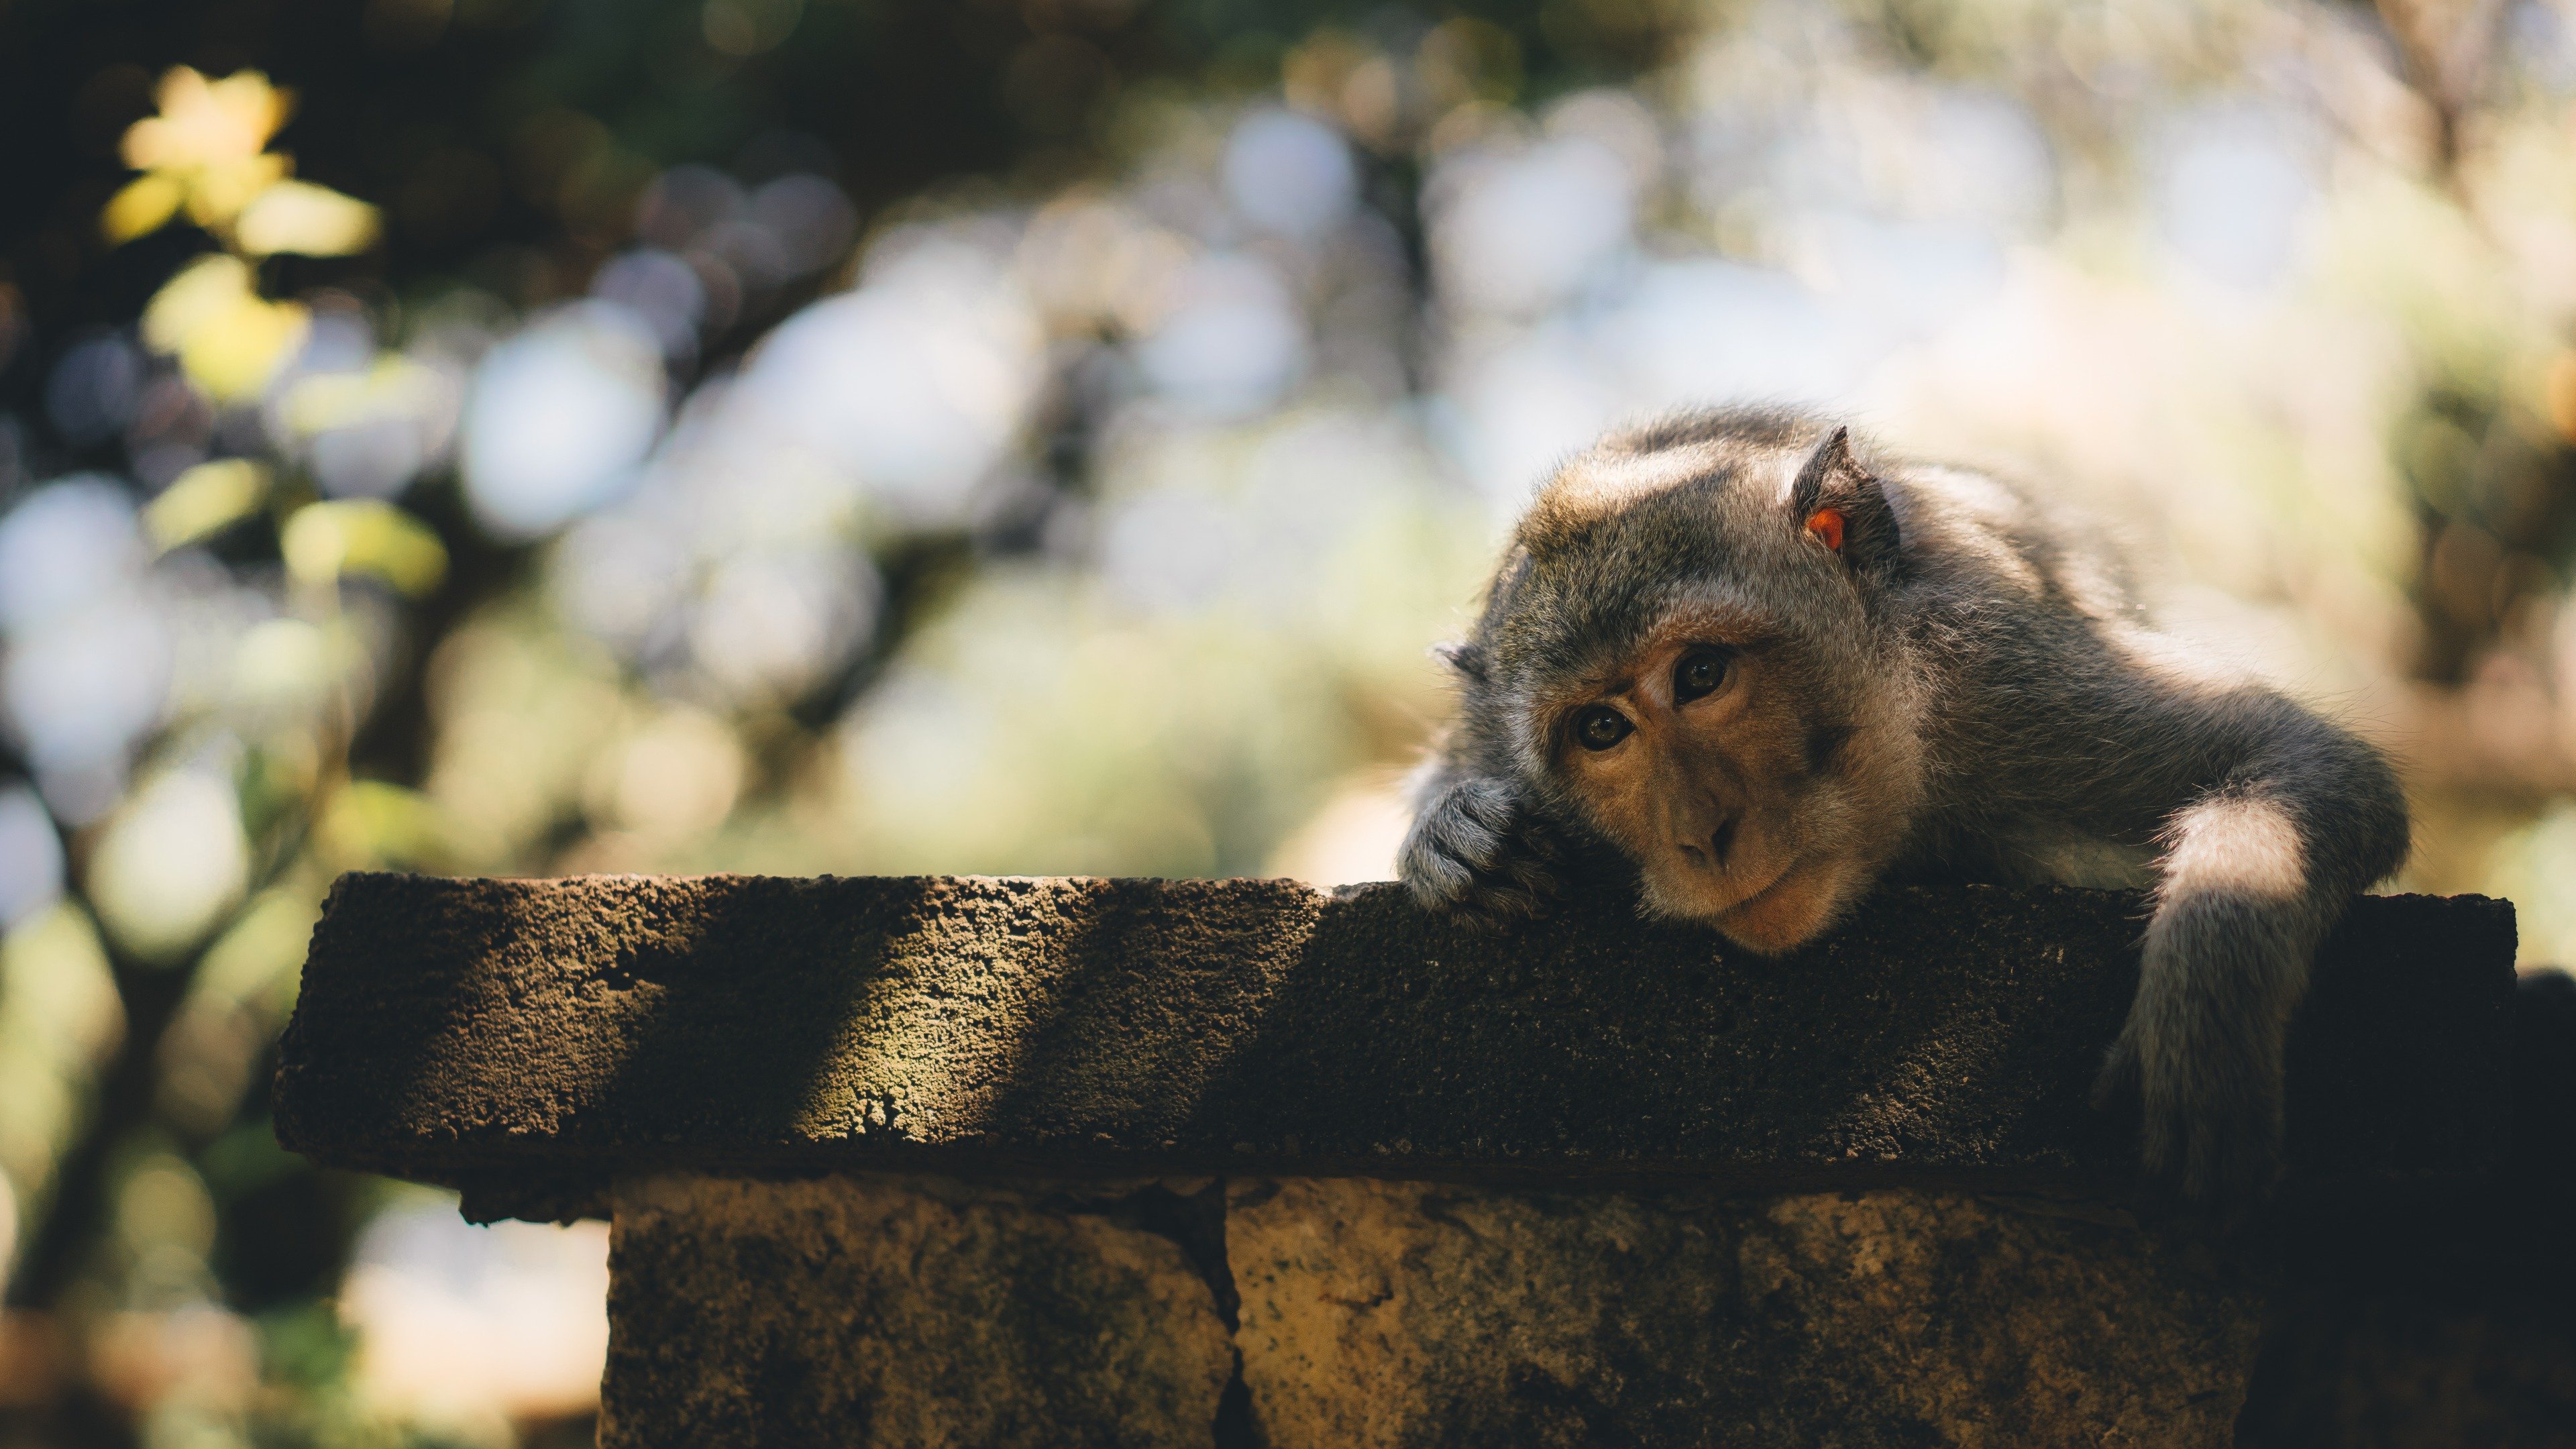 Cute Monkey On Fence Close-up Wallpaper - Cute Monkey On Tree - HD Wallpaper 